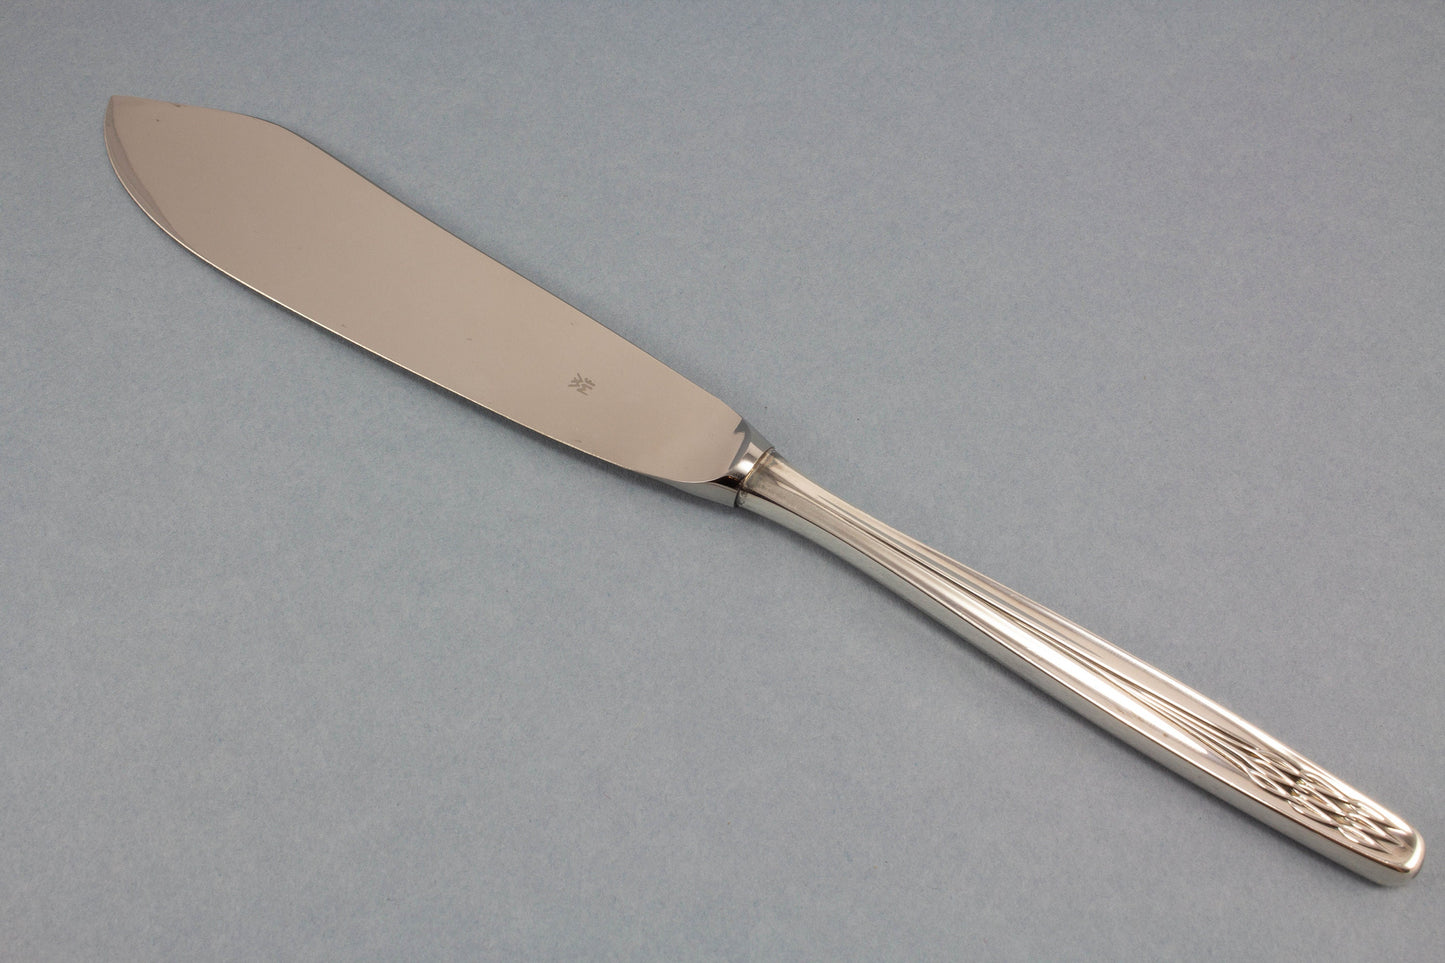 Schönes, versilbertes Tortenmesser von WMF, großes Messer für Hochzeitstorten